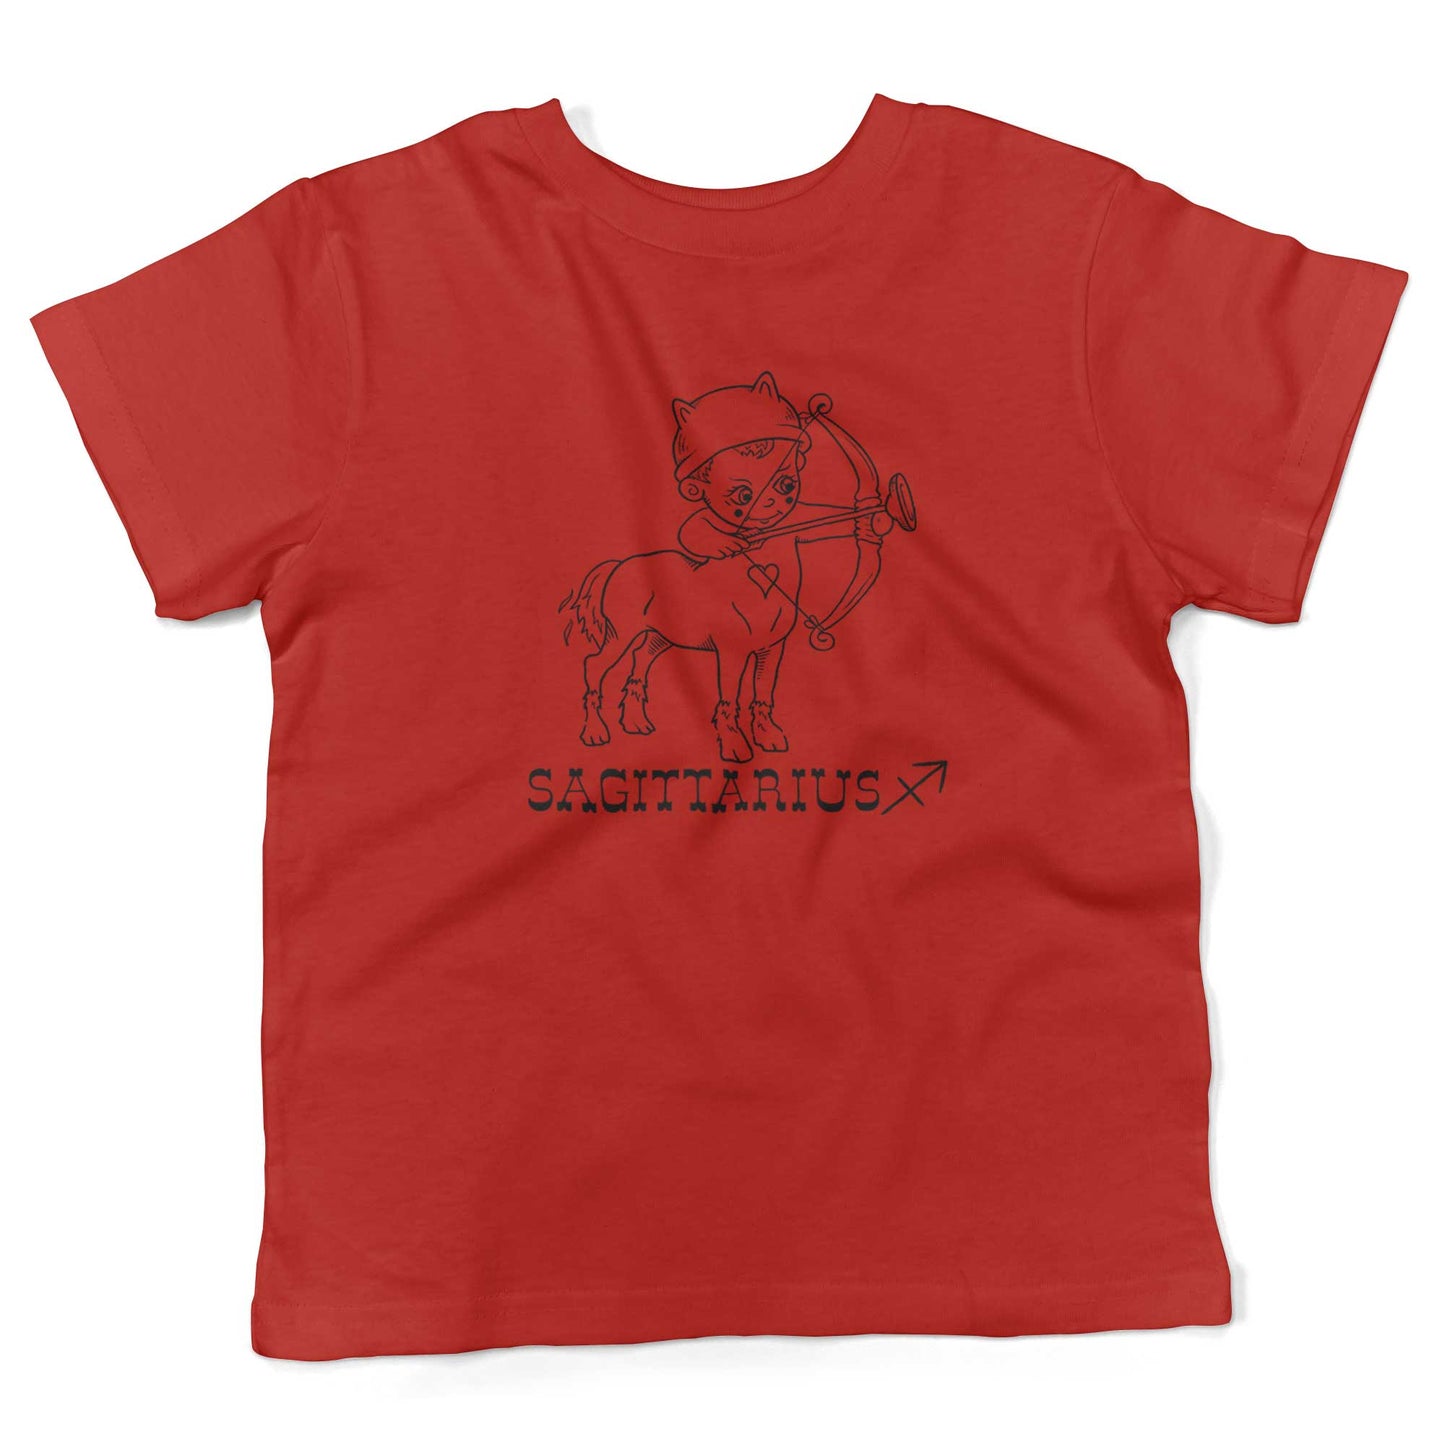 Sagittarius Cotton Toddler Shirt